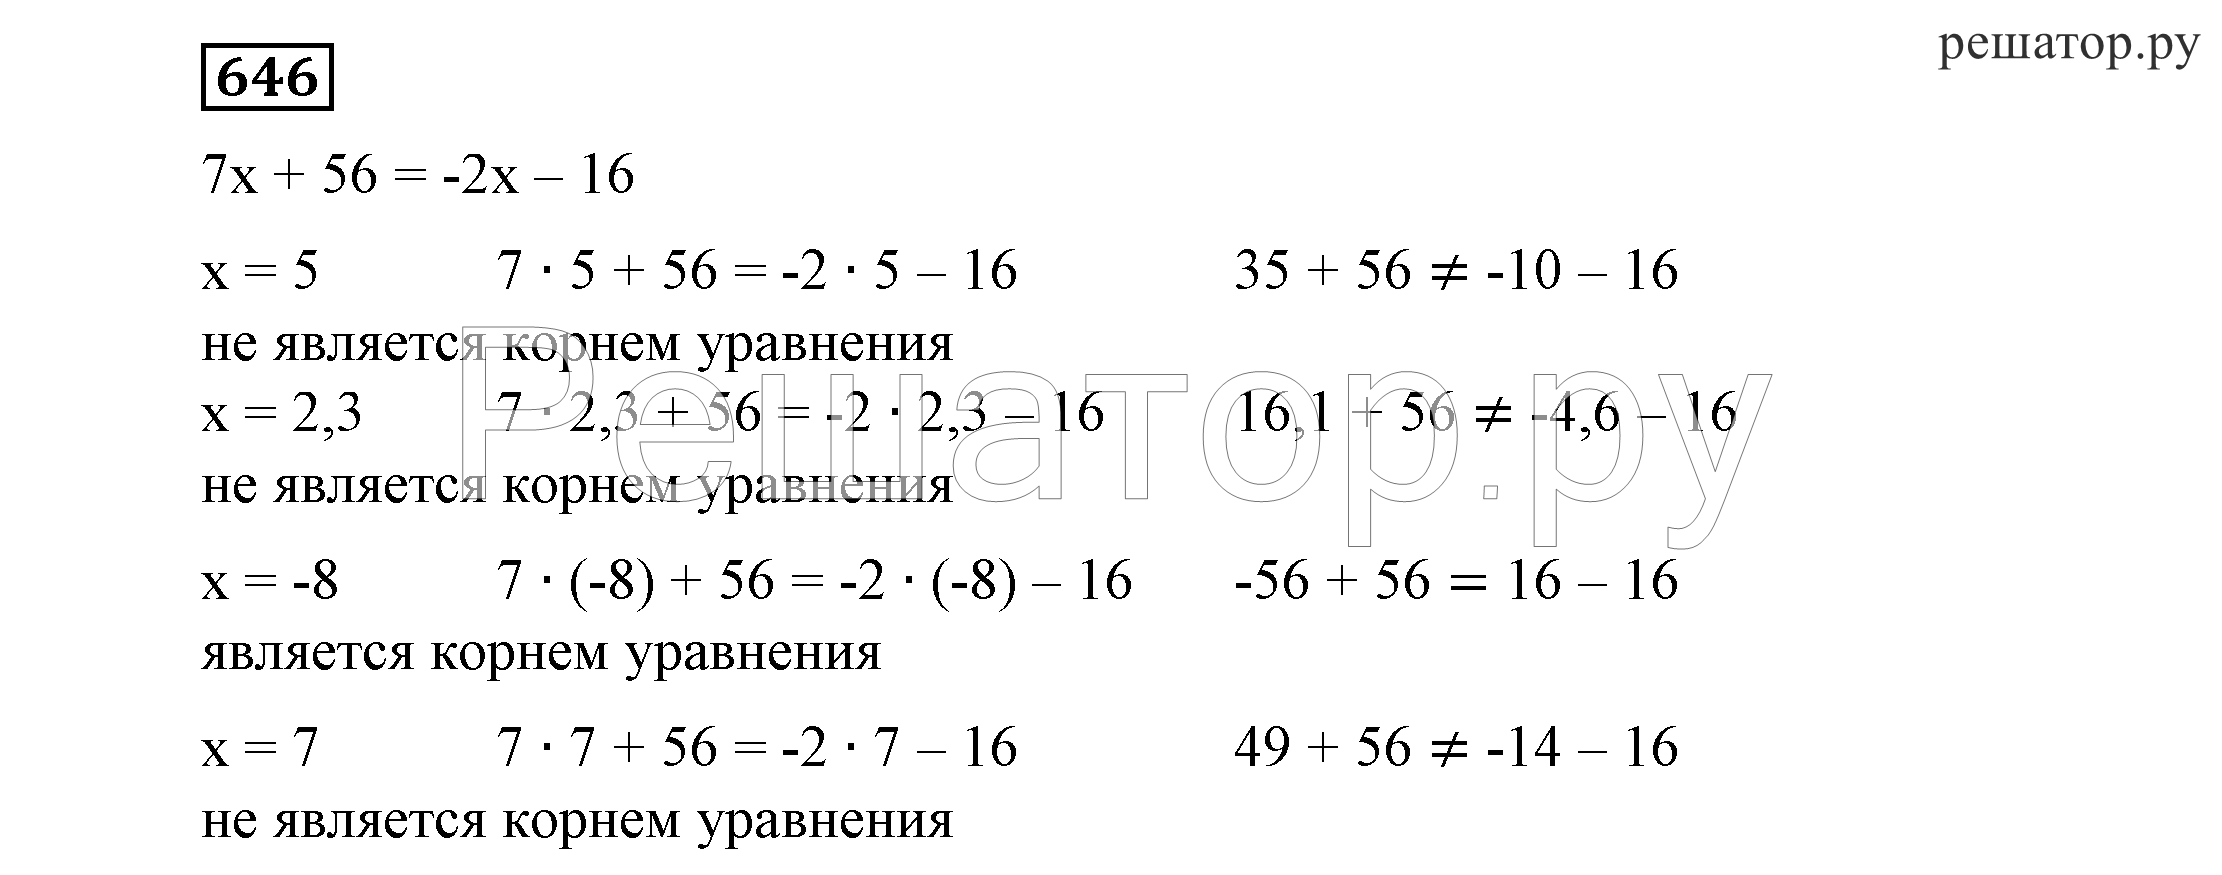 Никольский потапов решетников шевкин 7 класс